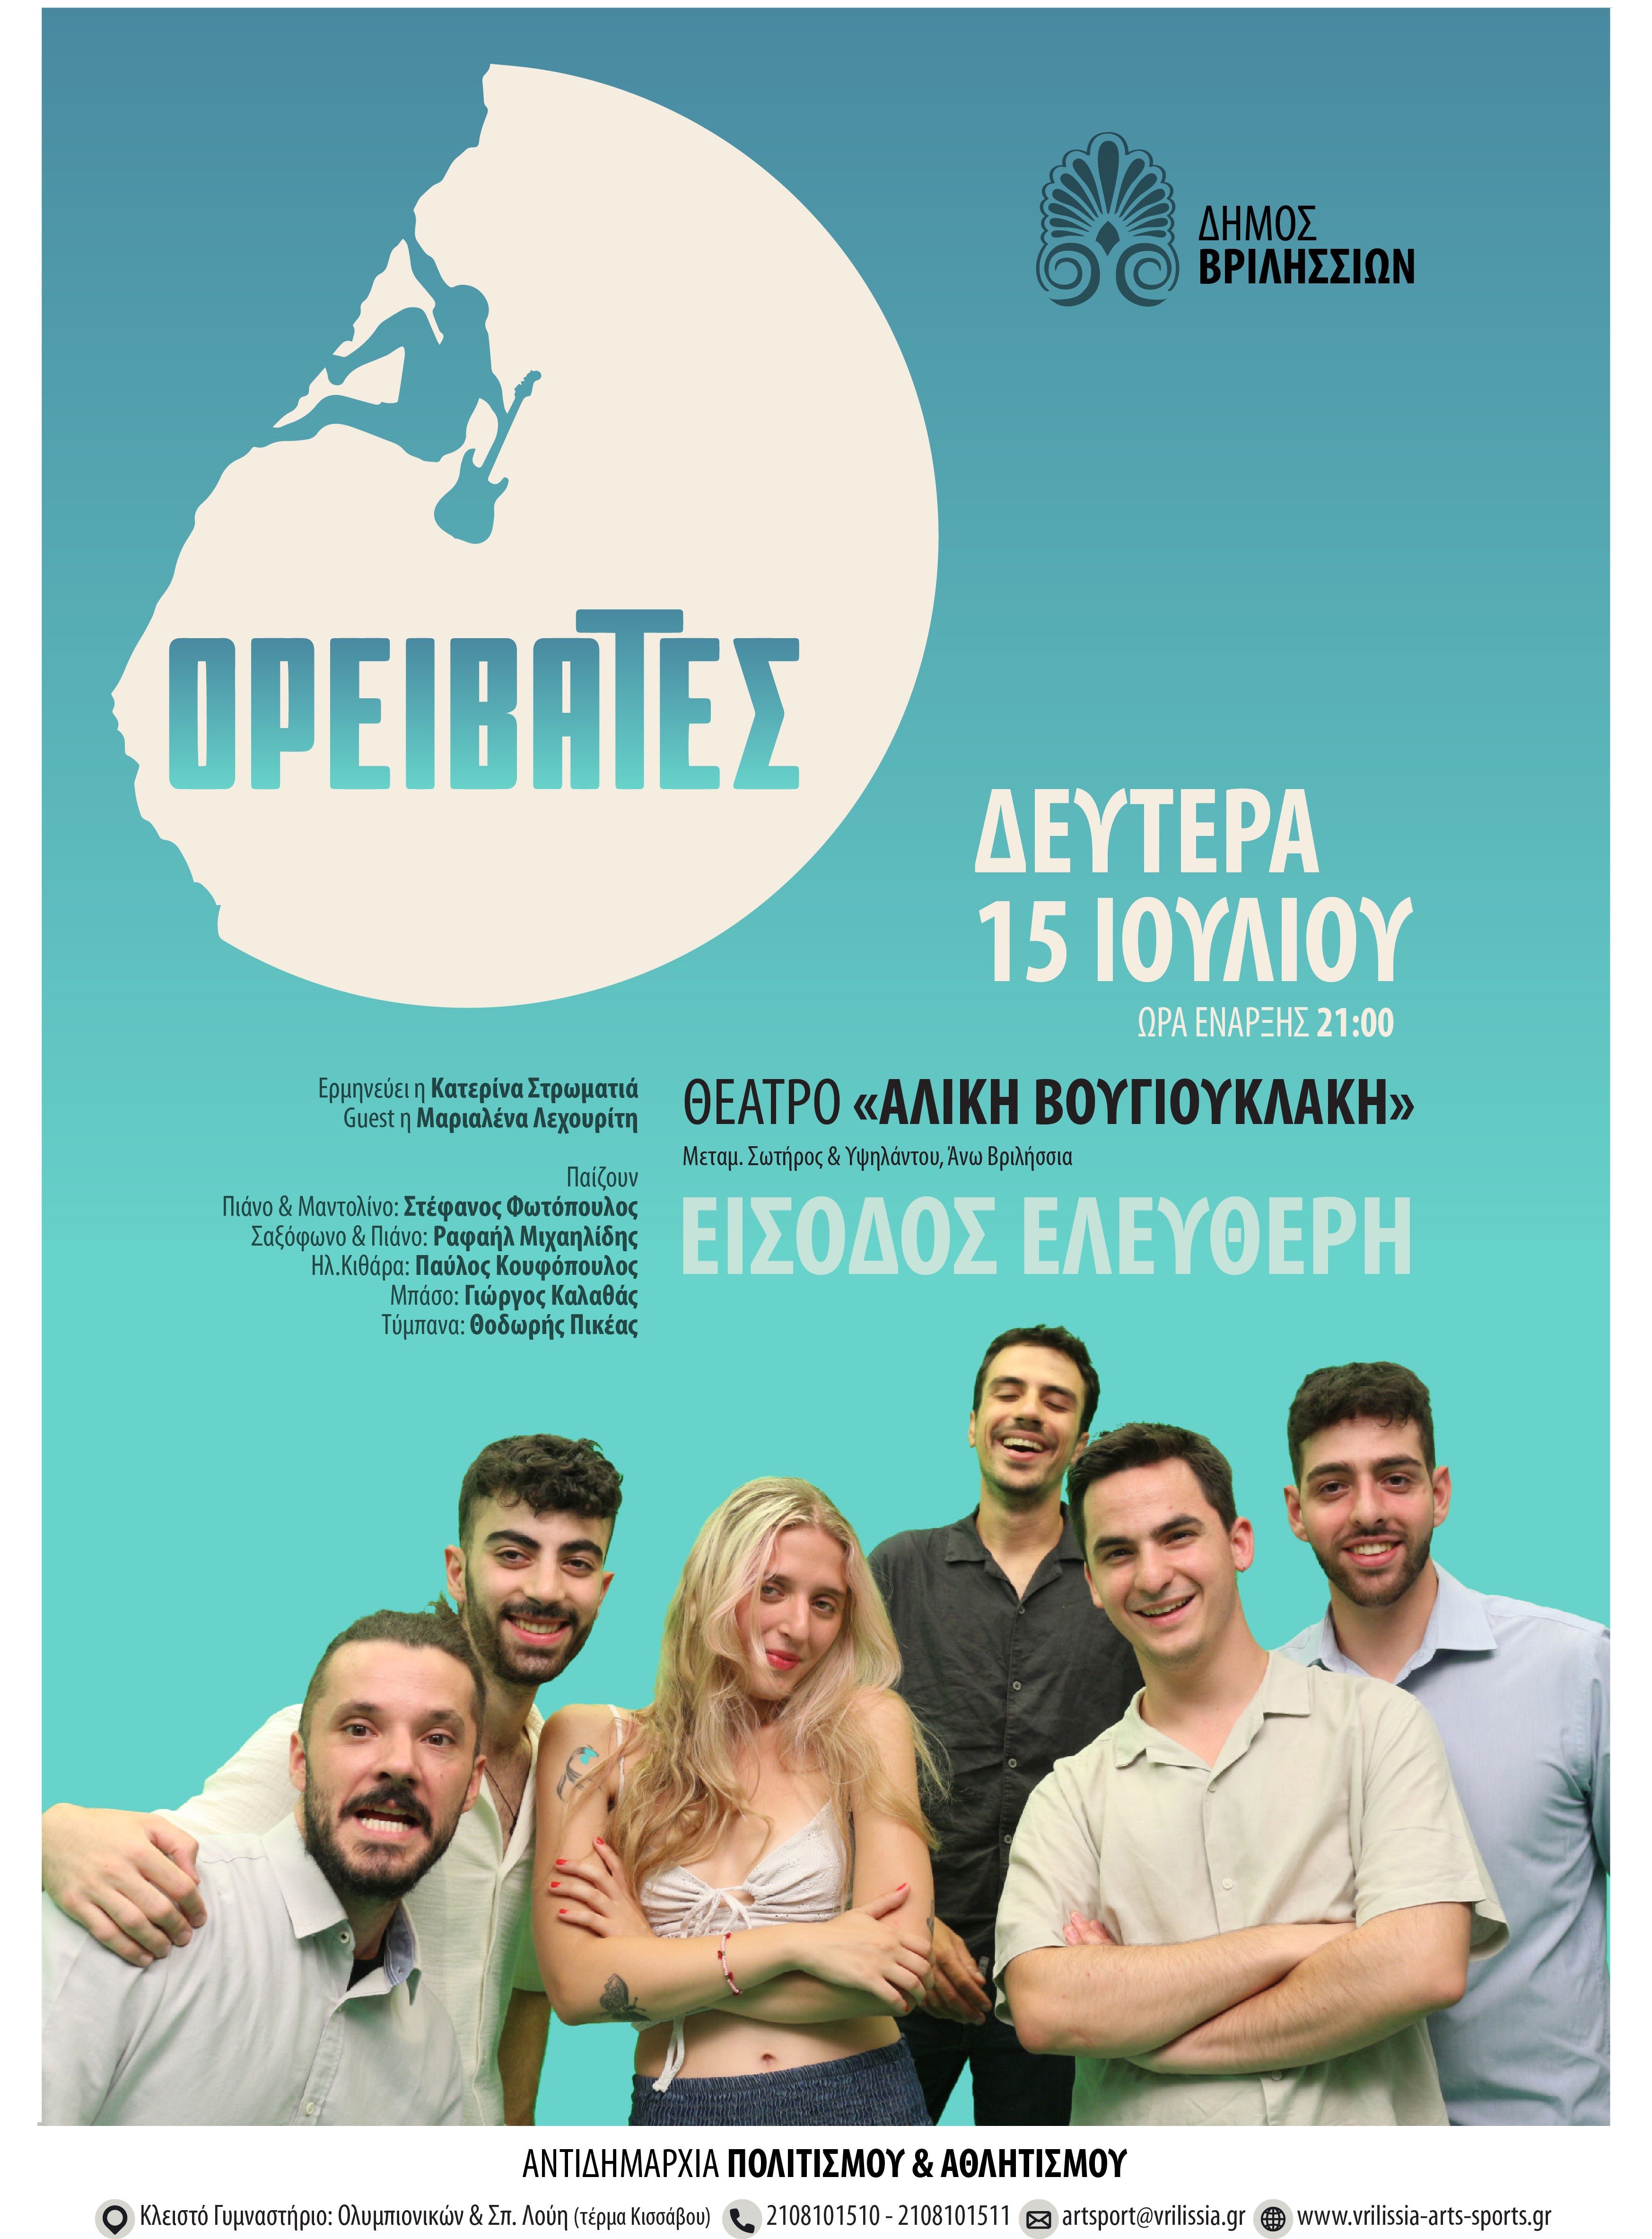 Οι «Ορειβάτες» στο θέατρο «Αλ. Βουγιουκλάκη» τη Δευτέρα 15/07 στις 21:00 με ελεύθερη είσοδο